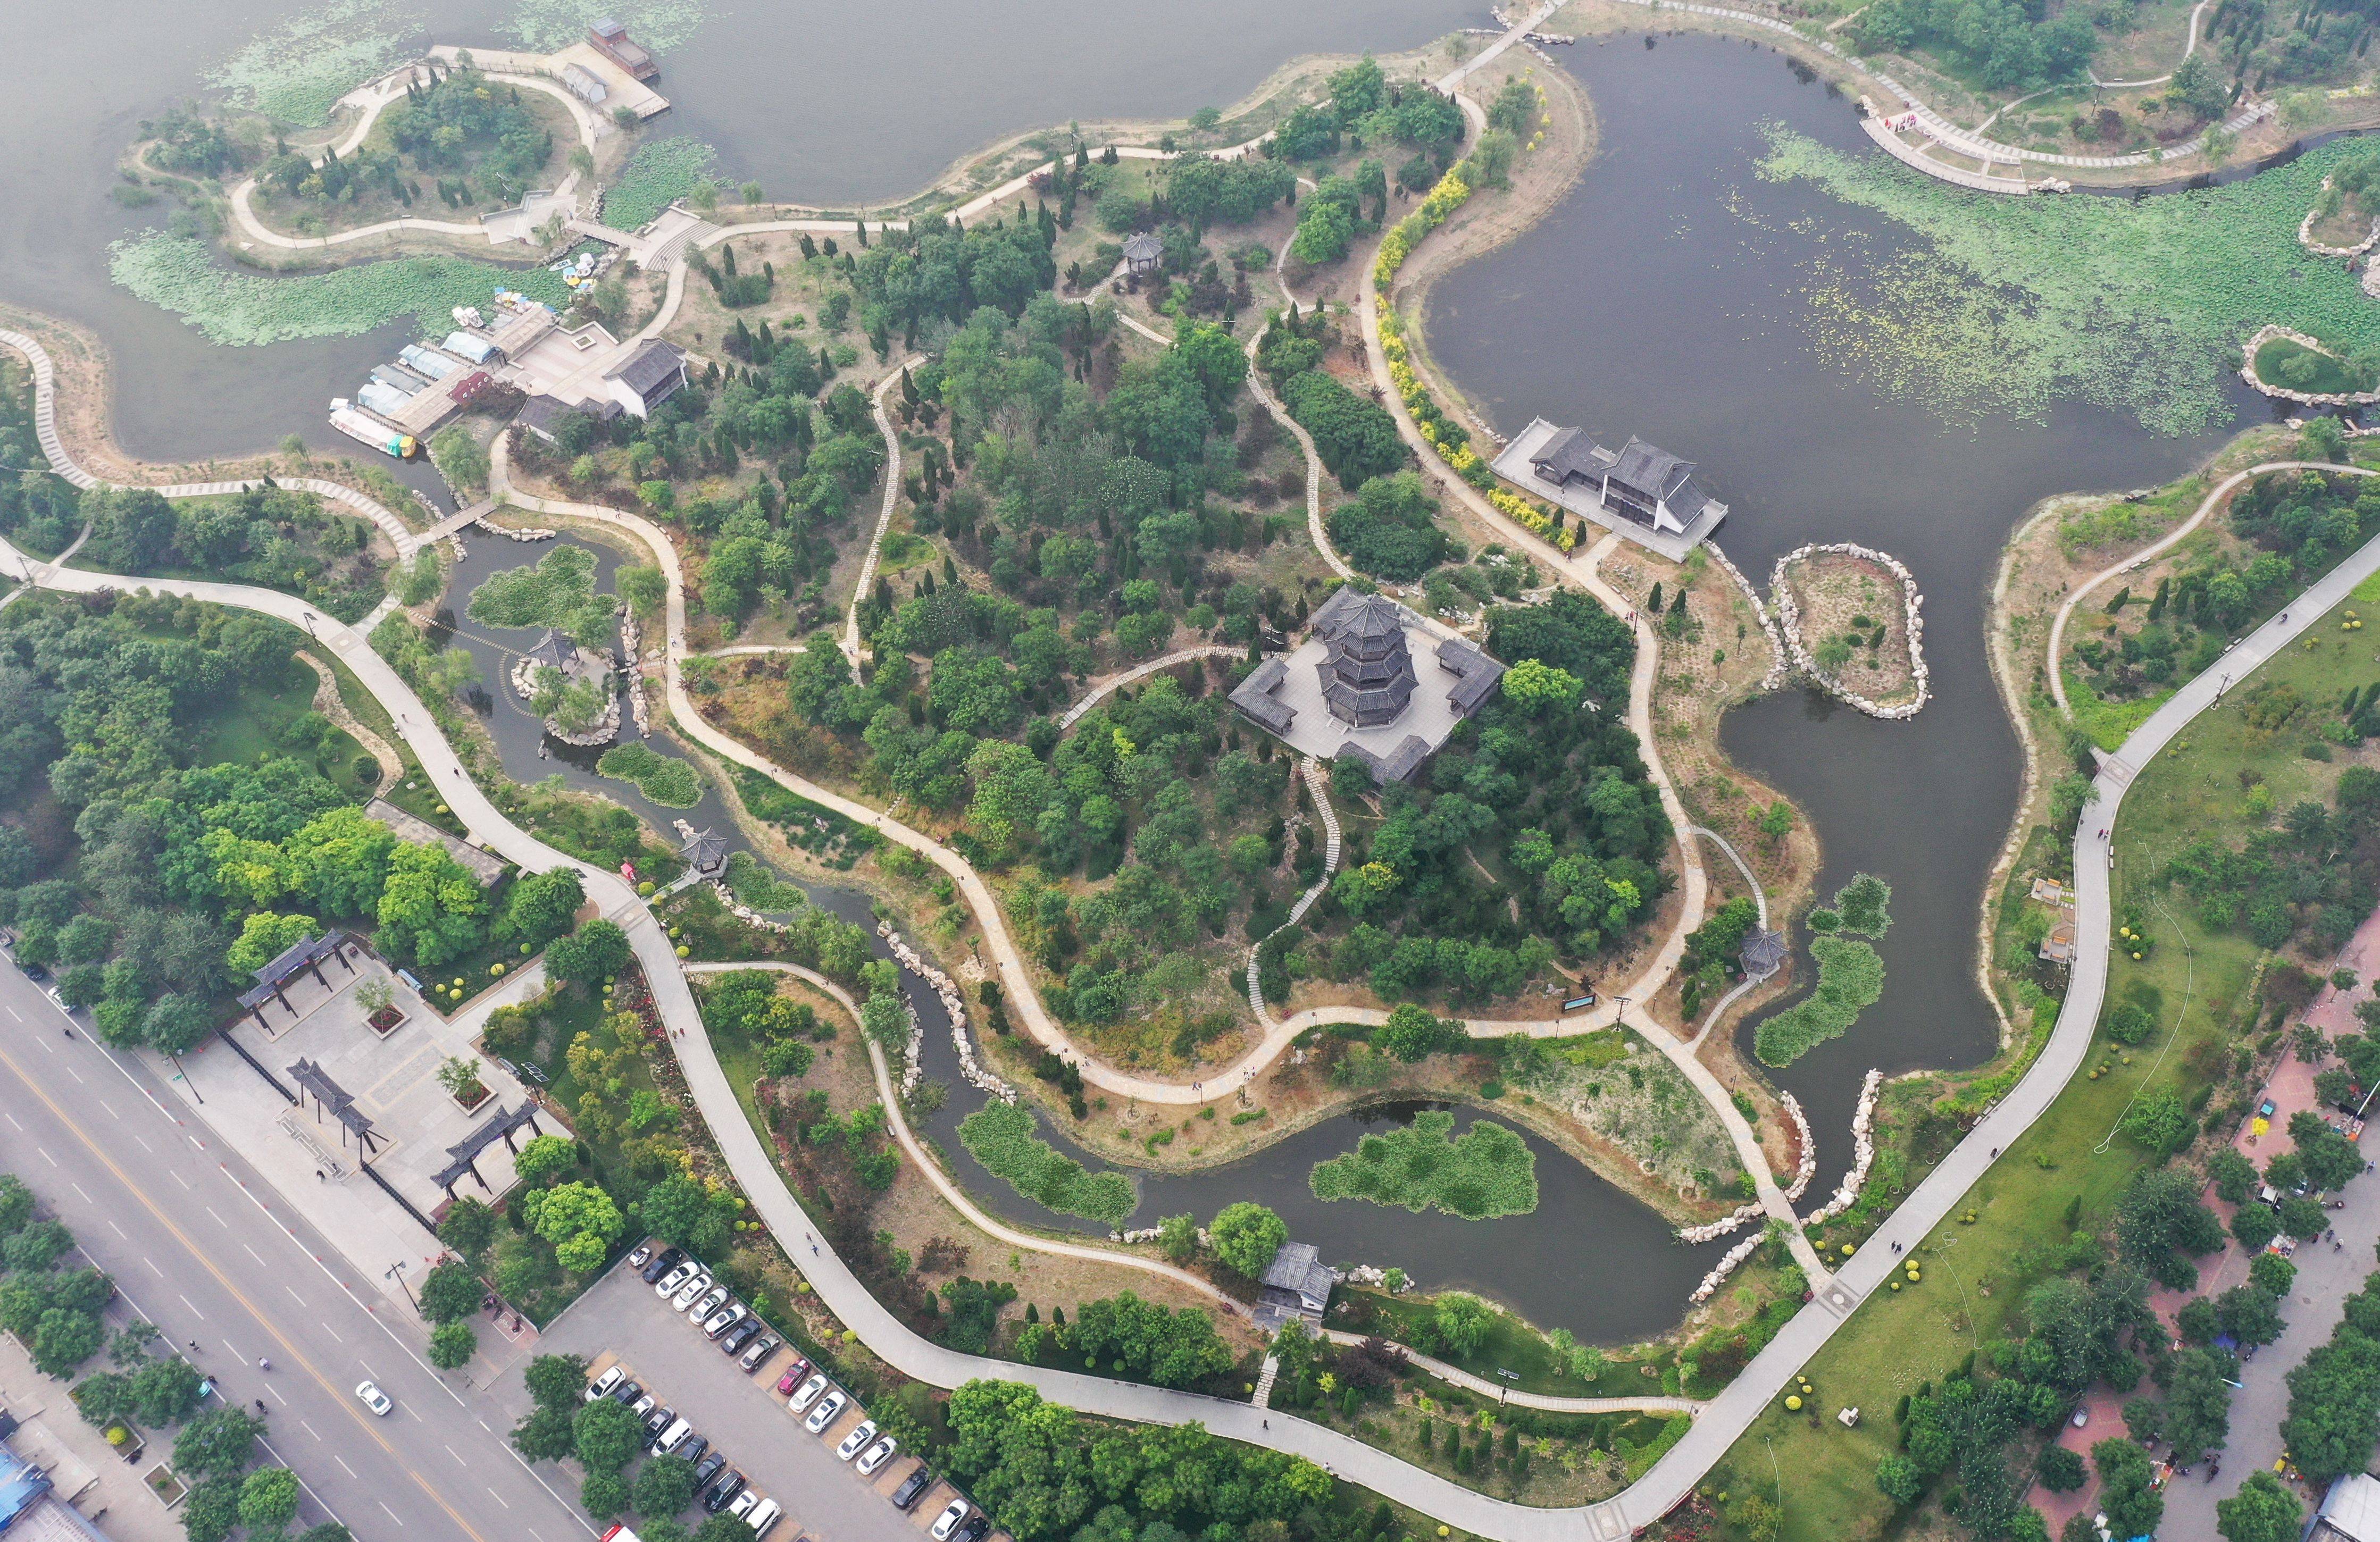 宿州朱仙庄塌陷区公园图片